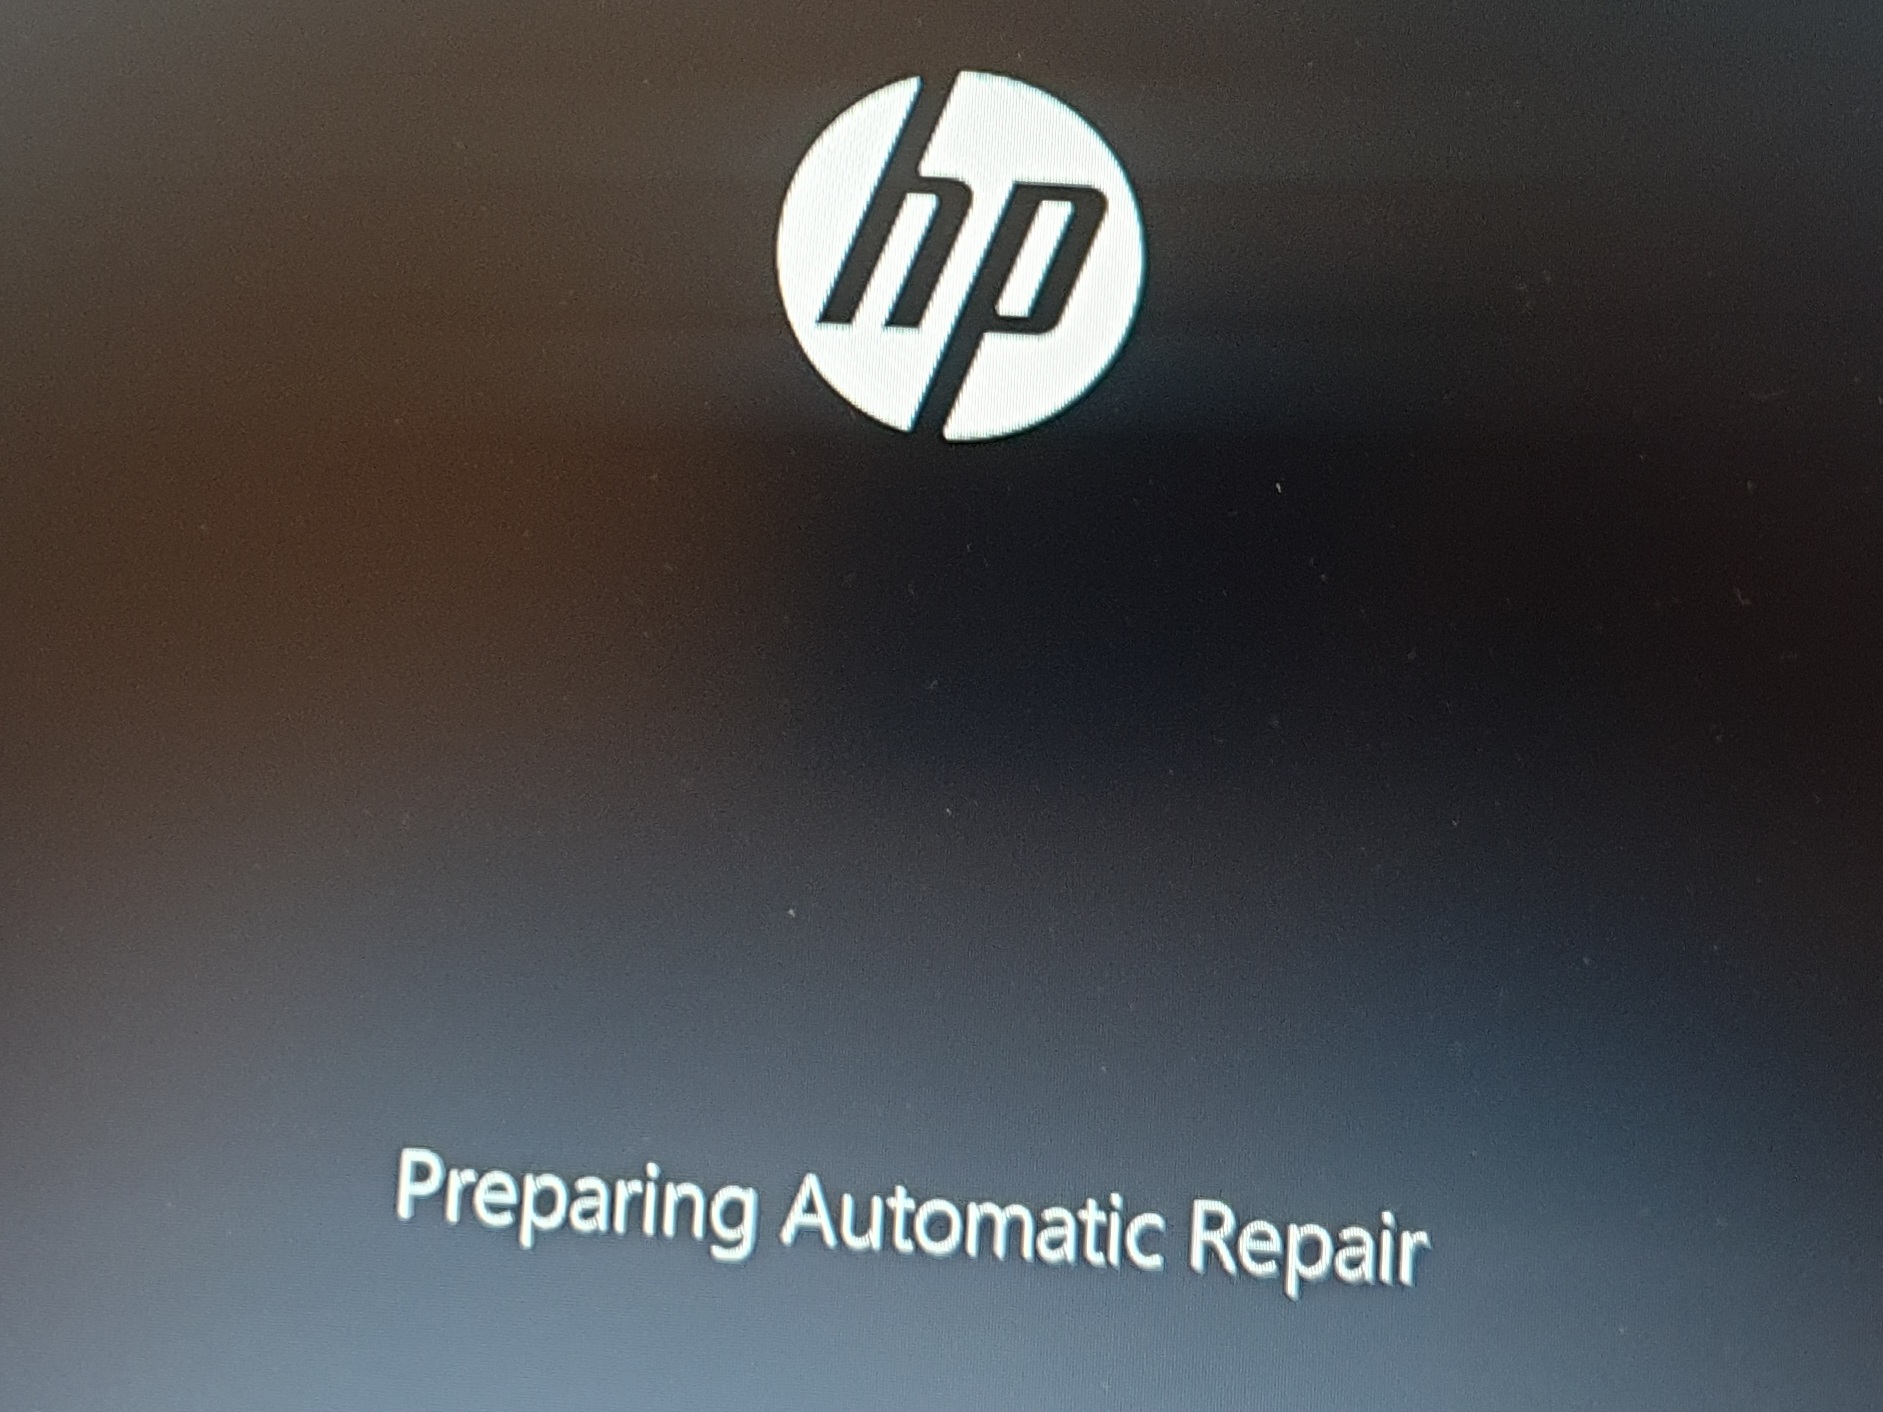 Stuck at "Preparing Automatic Repair" e9f00de4-53af-45f8-818b-8f8796f505f7?upload=true.jpg